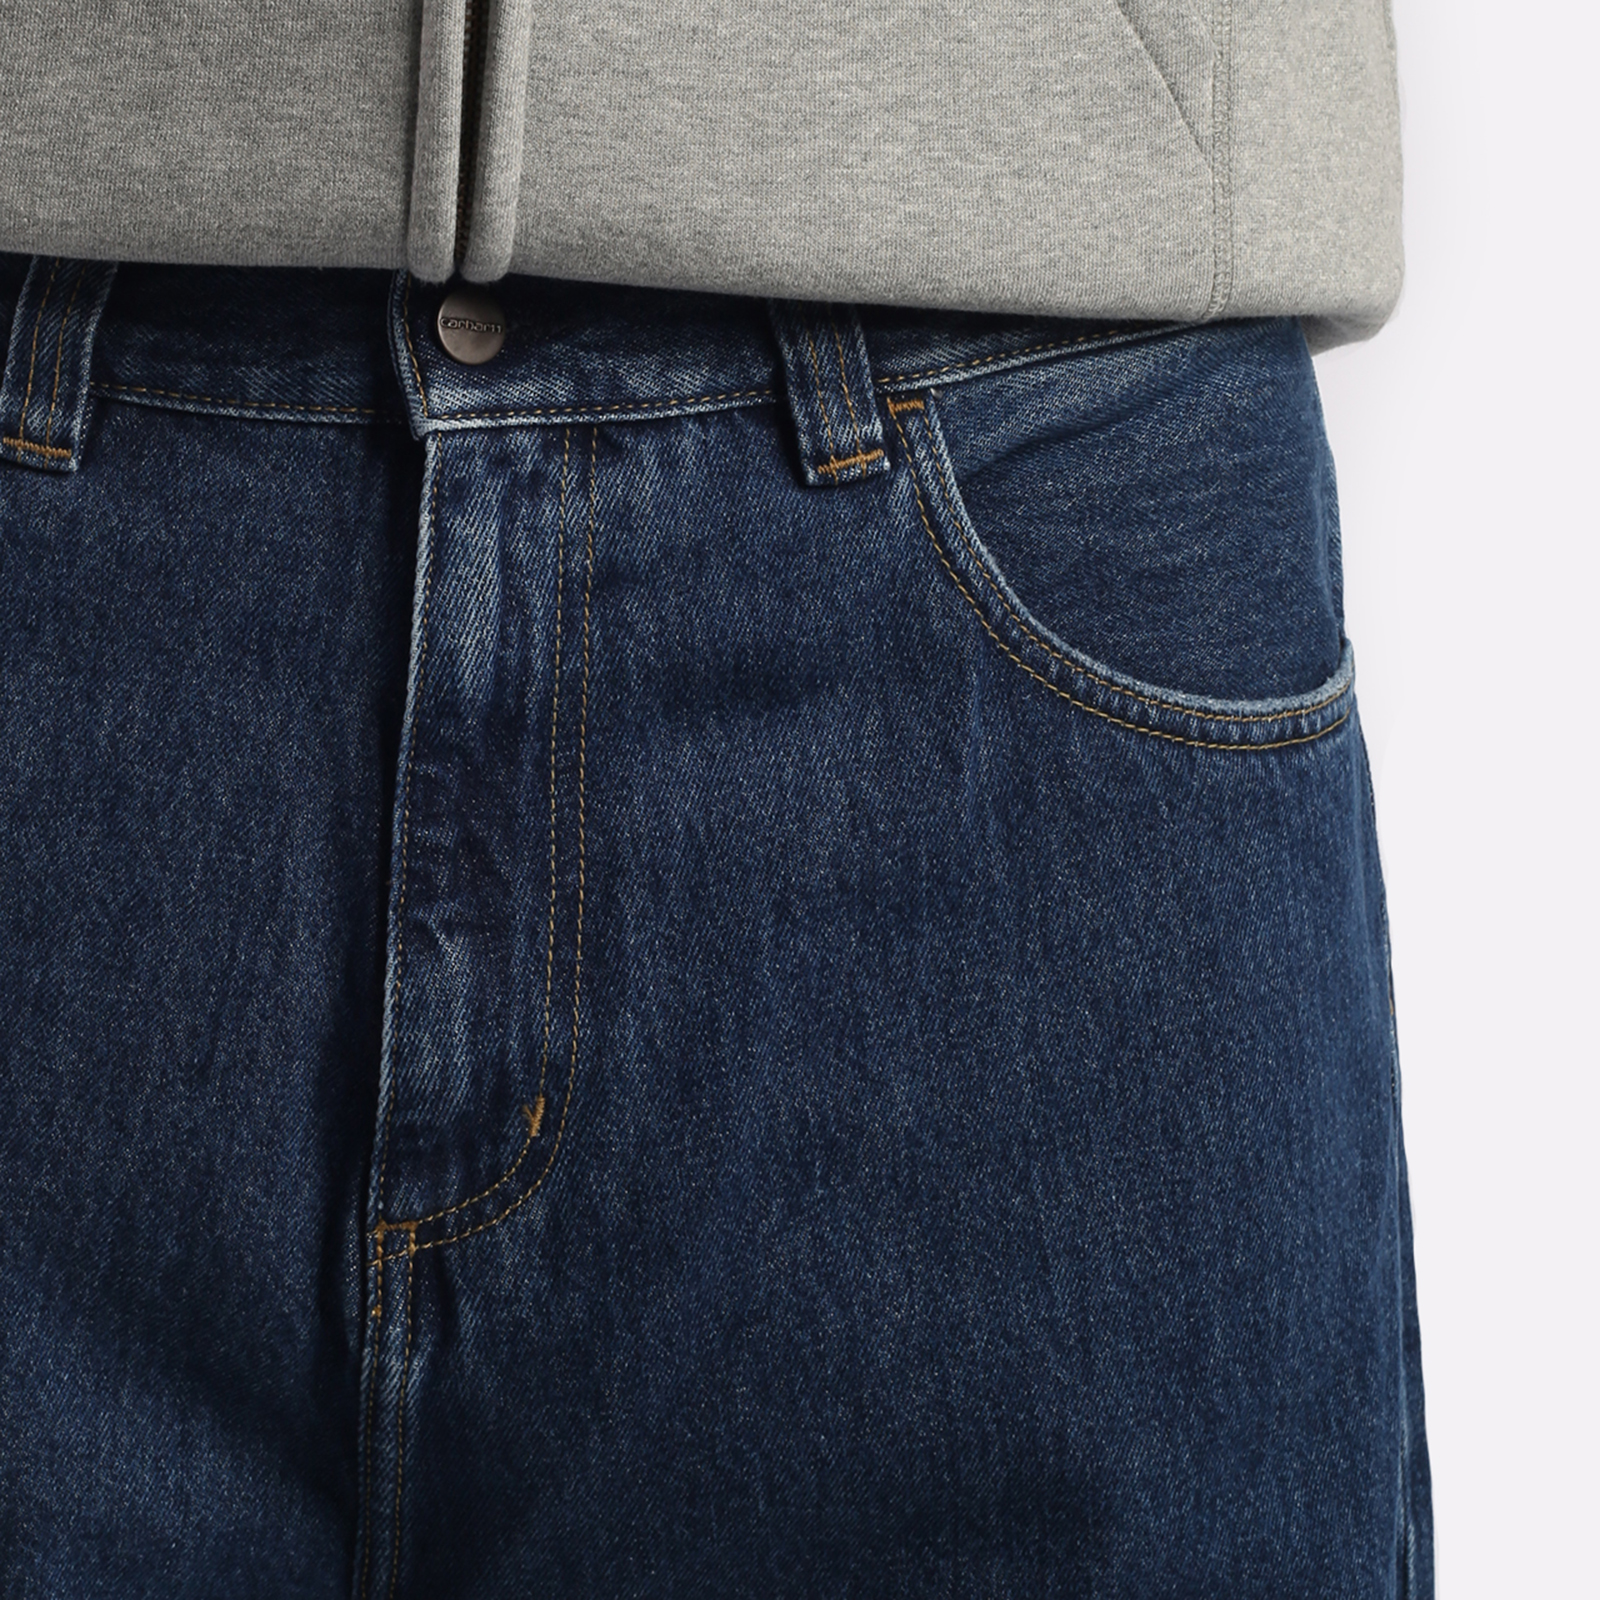 мужские брюки Carhartt WIP Smith  (I031246-blue)  - цена, описание, фото 3